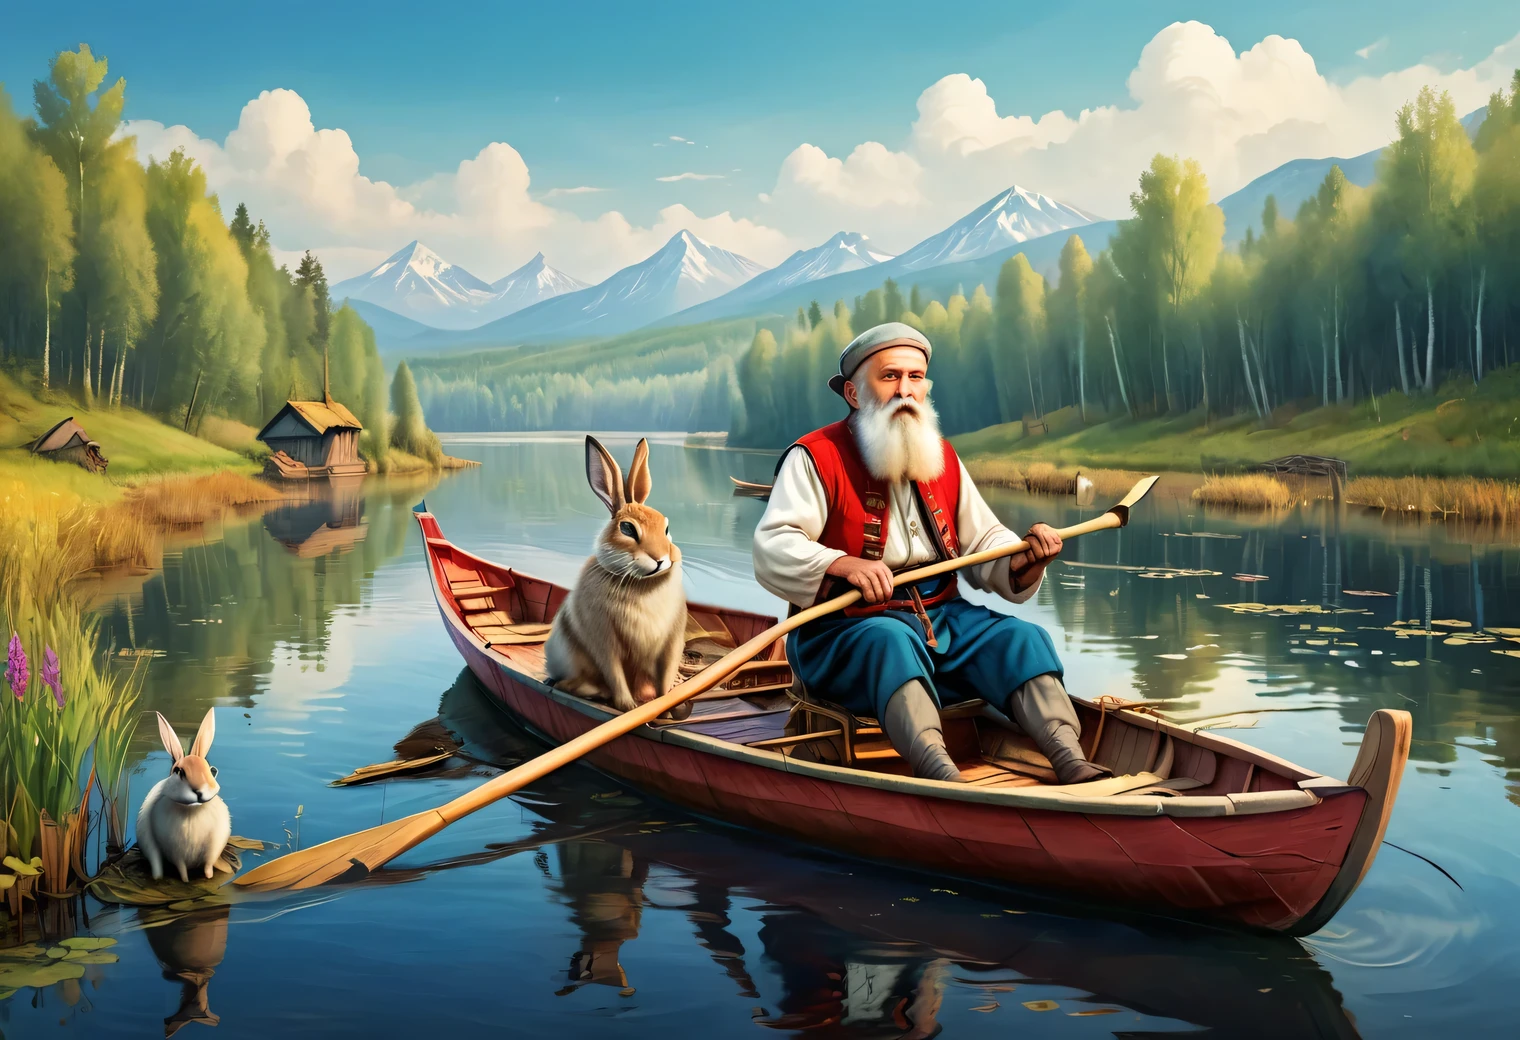 漂浮的, 儿童杂志插图风格的图像, 湖上漂浮着一艘船, 一位 70 岁左右的斯拉夫胡须男子穿着朴素的俄罗斯农民服装，在船上划桨, 5 只野兔坐在船上四处张望, 高清, 鲜艳的色彩, 卡通化